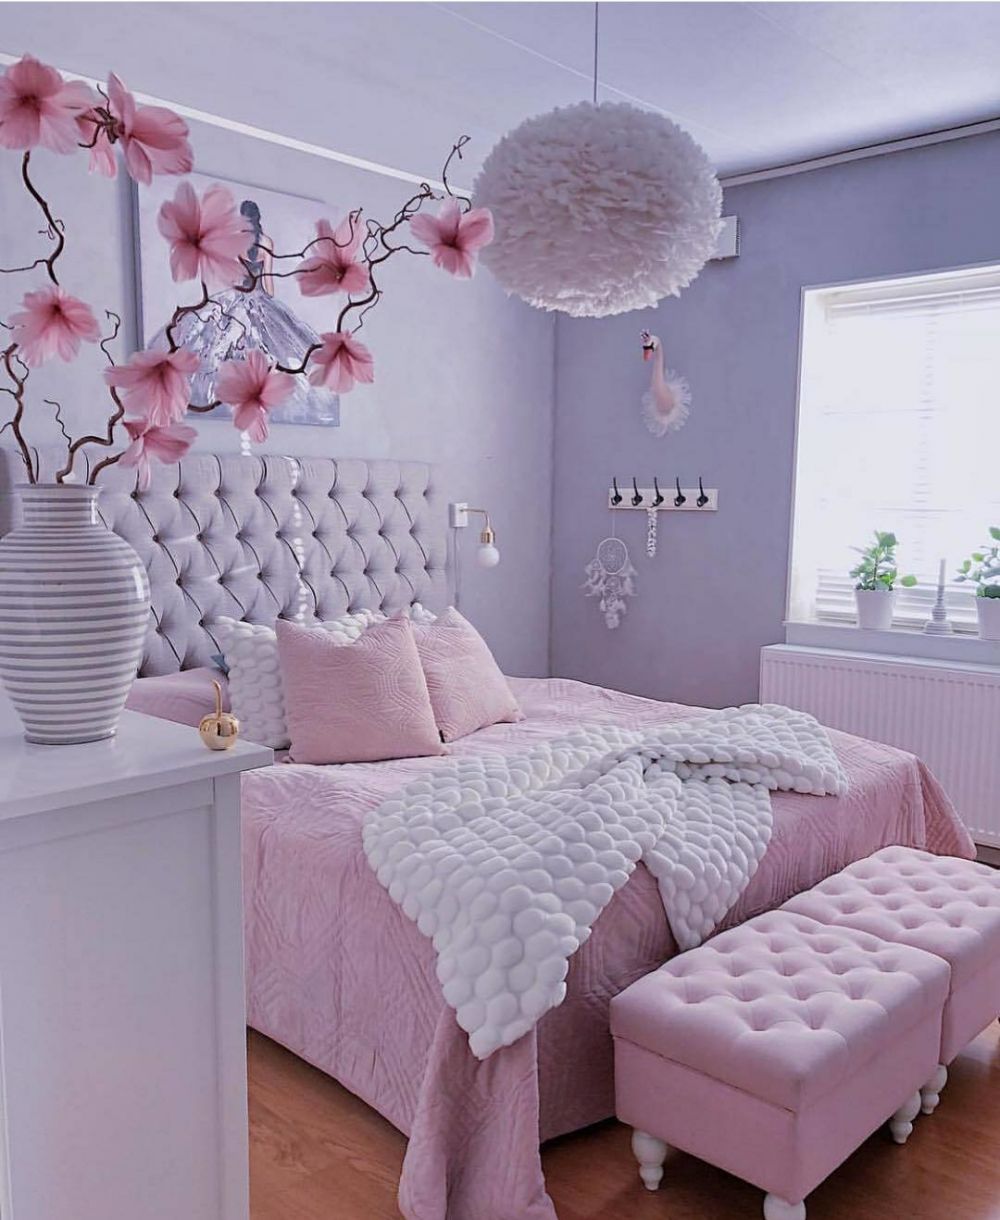 31 Gambar Desain Interior Kamar Tidur Warna Pink Paling Populer di Dunia